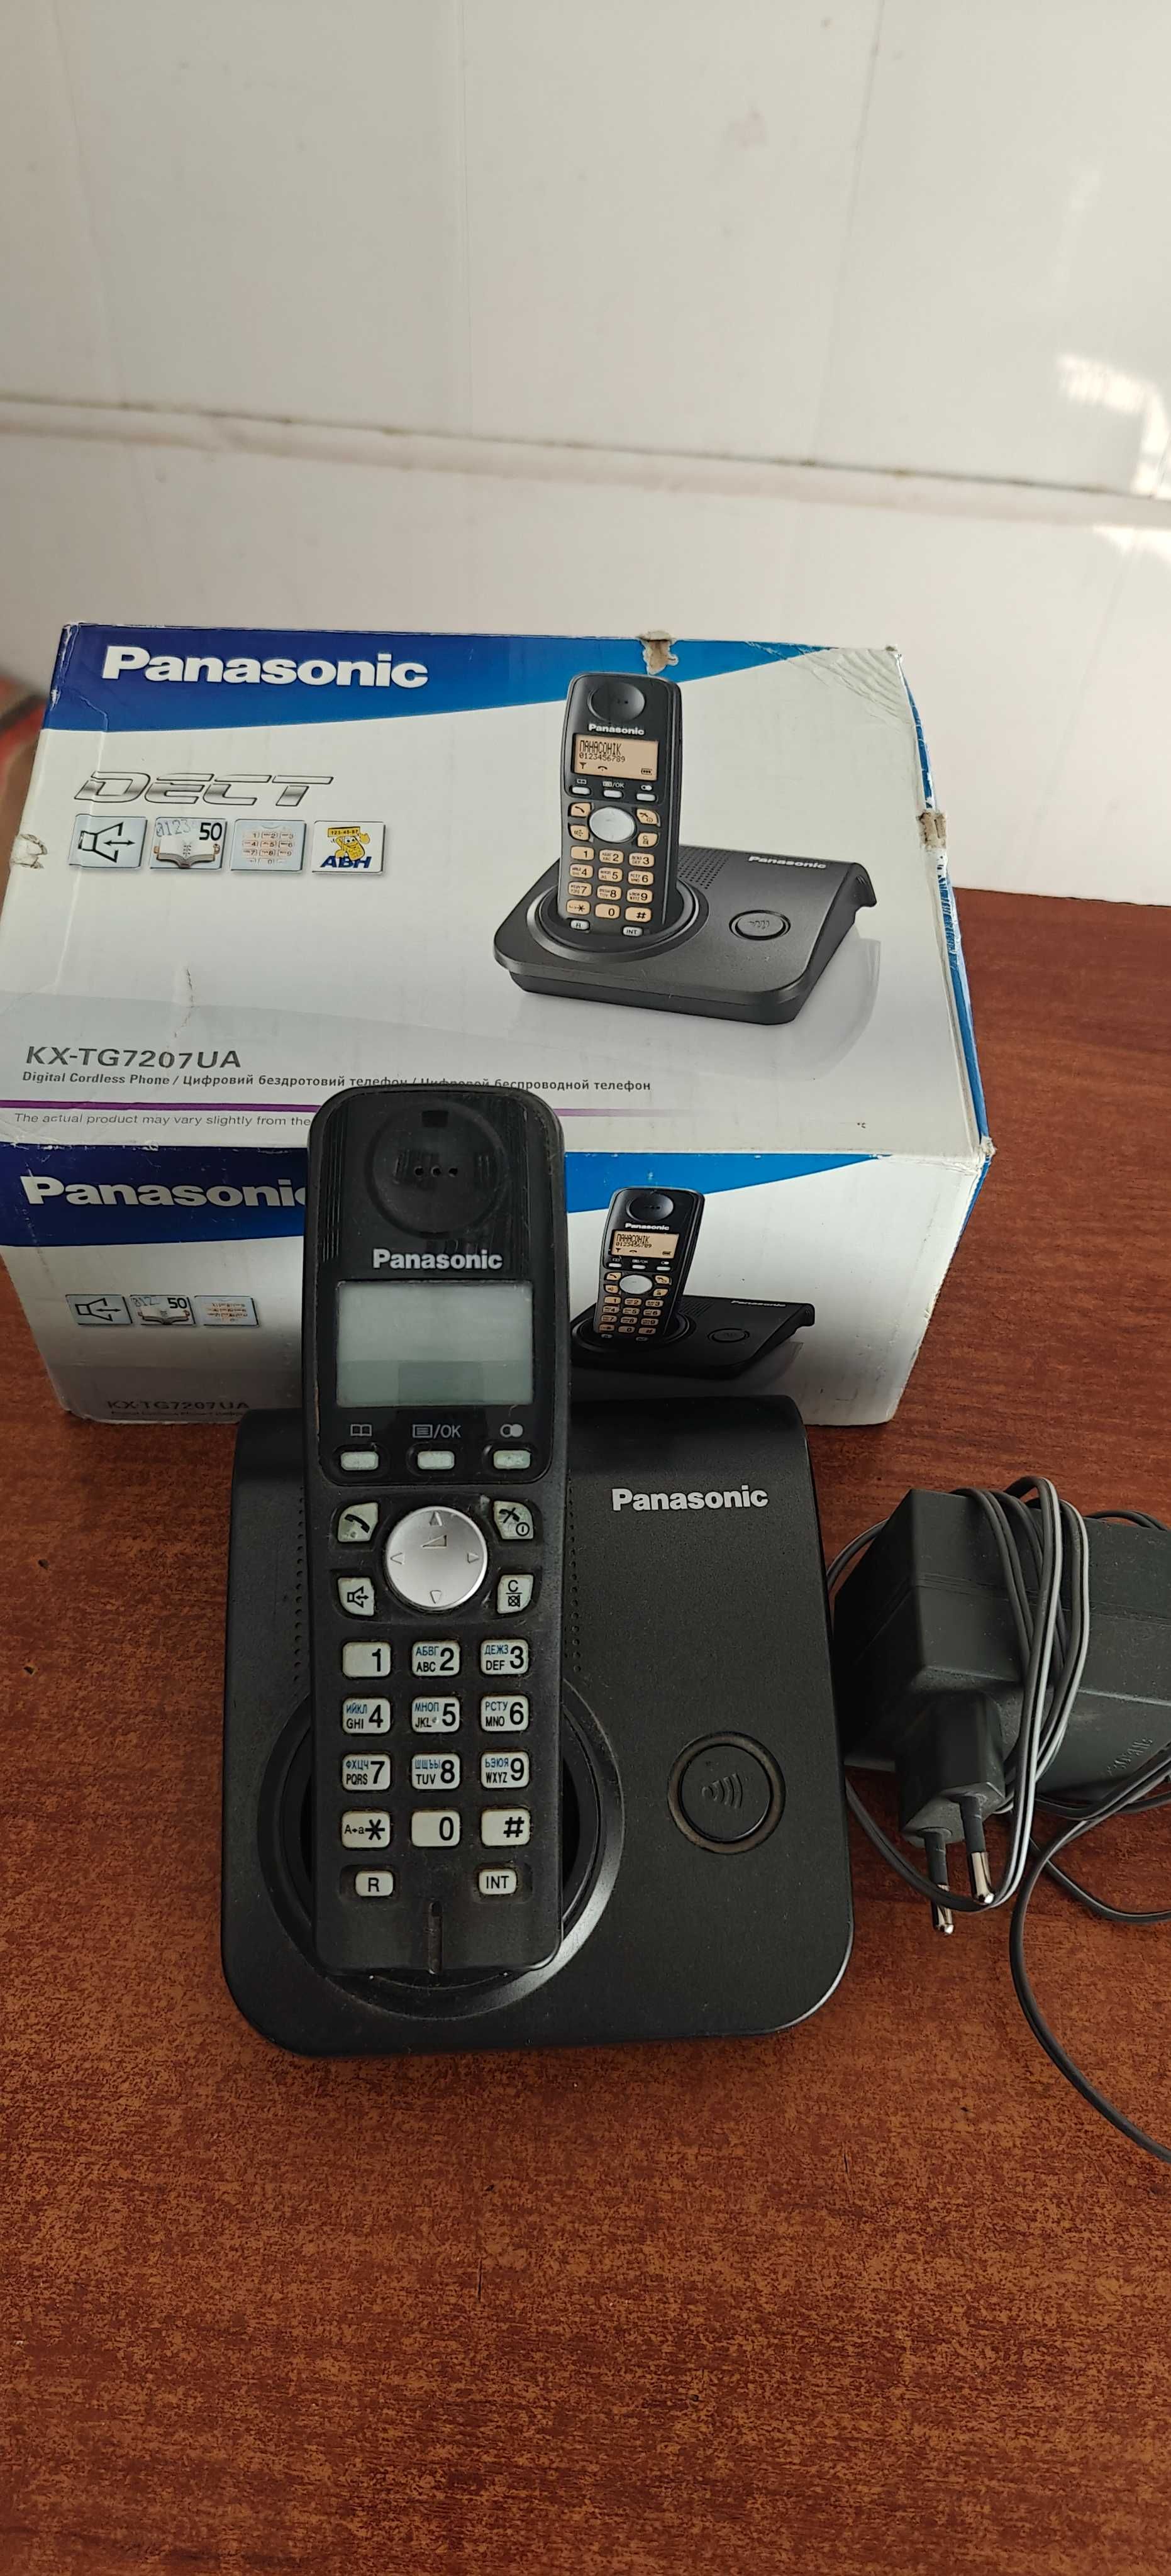 Телефон Panasonic KX-G7207UA в хорошем состоянии